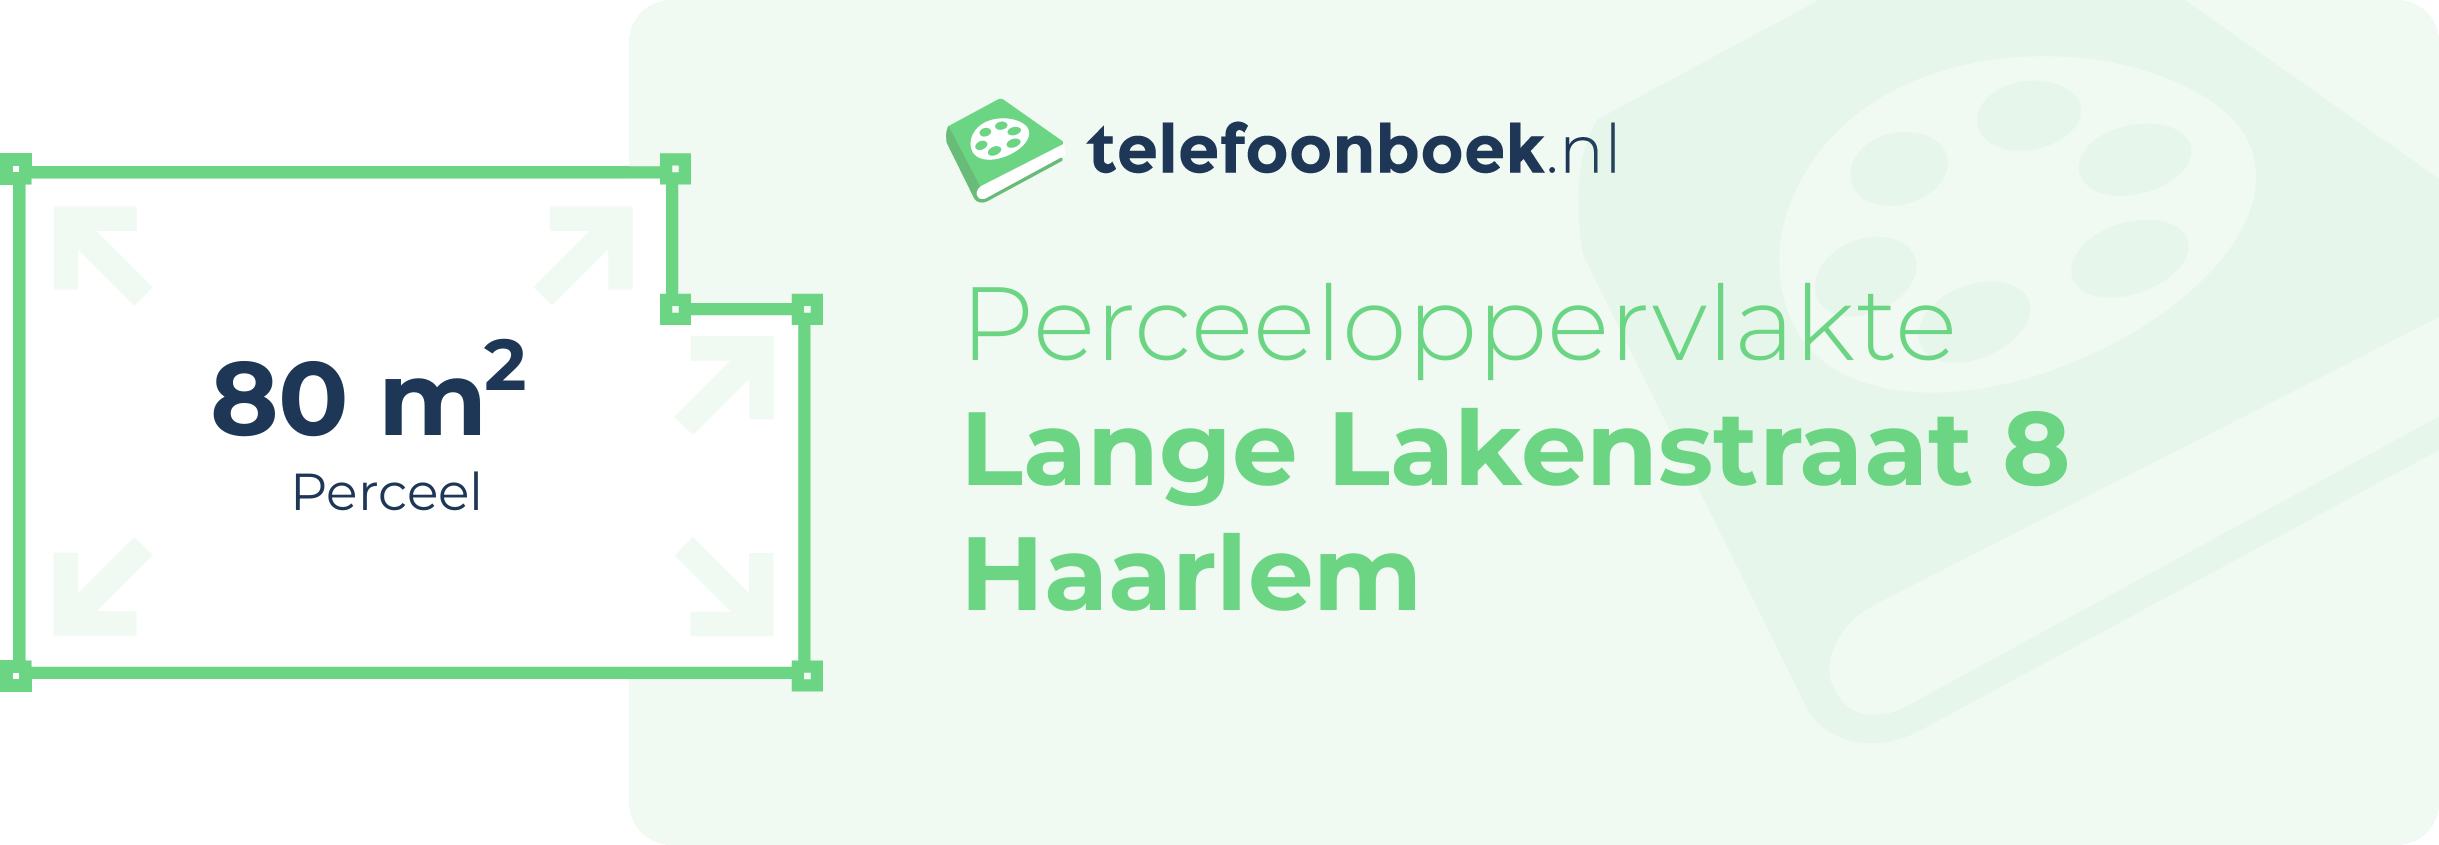 Perceeloppervlakte Lange Lakenstraat 8 Haarlem